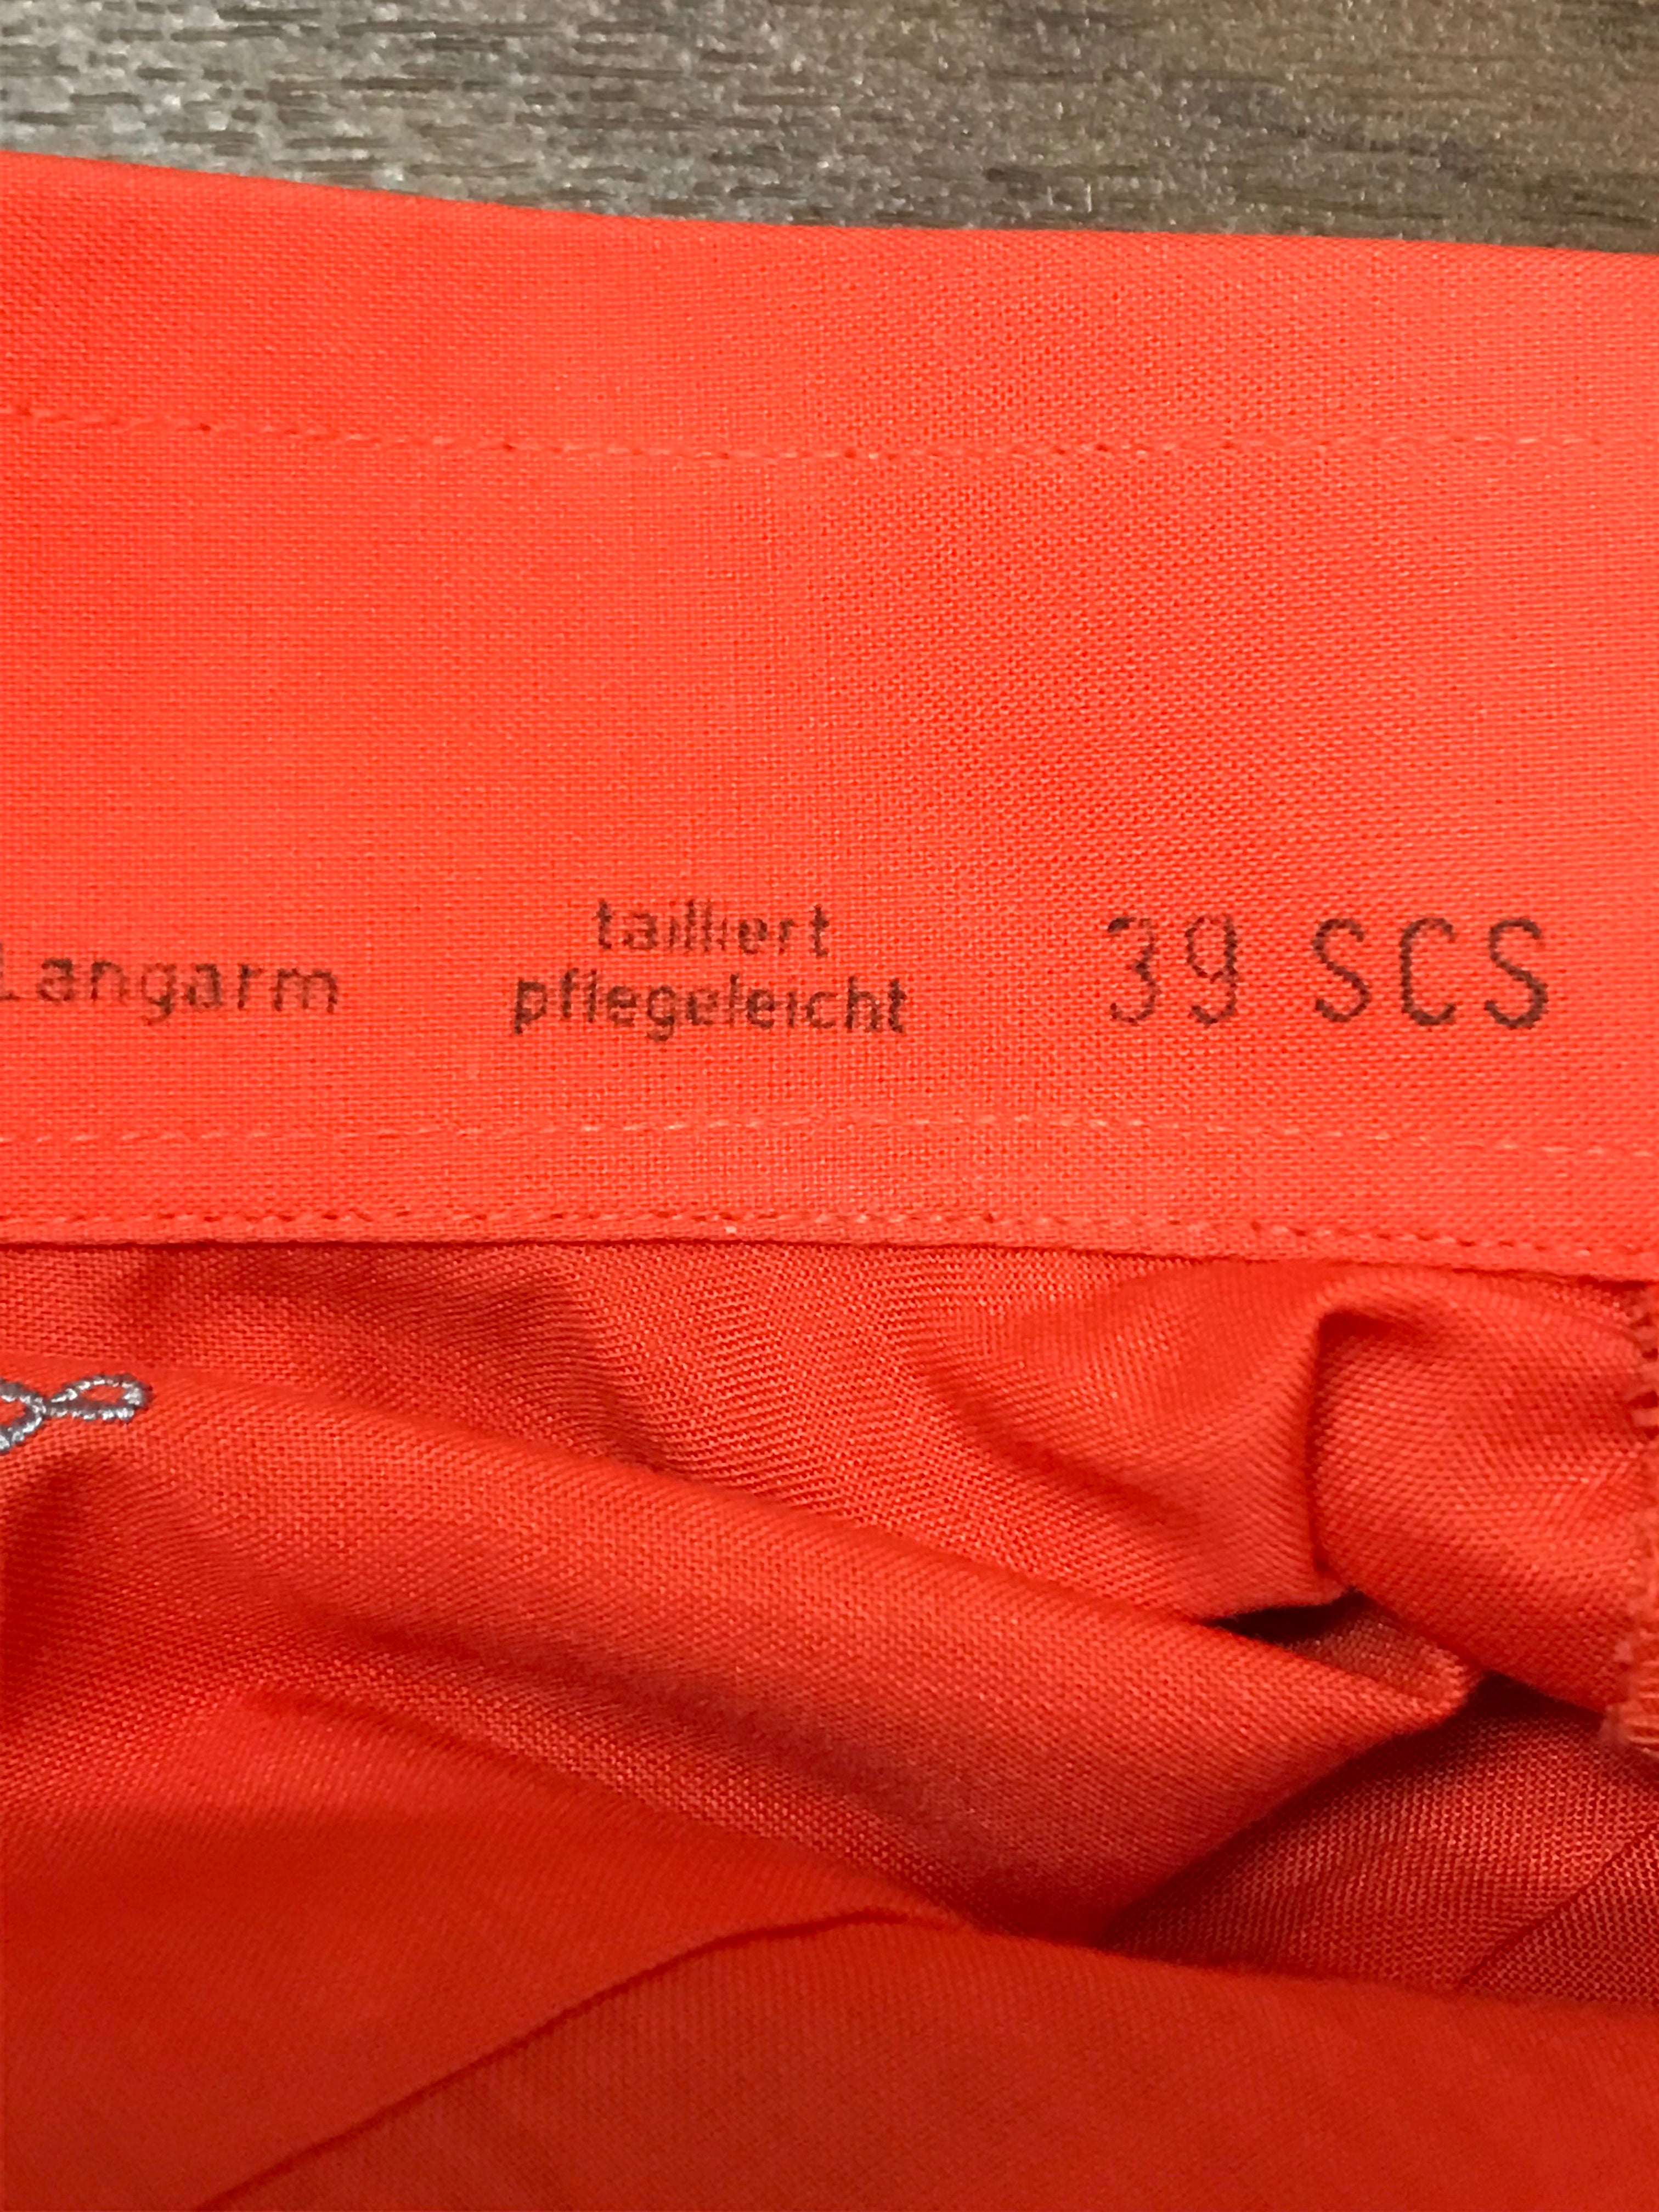 70er Jahre Hemd Vintage Gr.39 orange